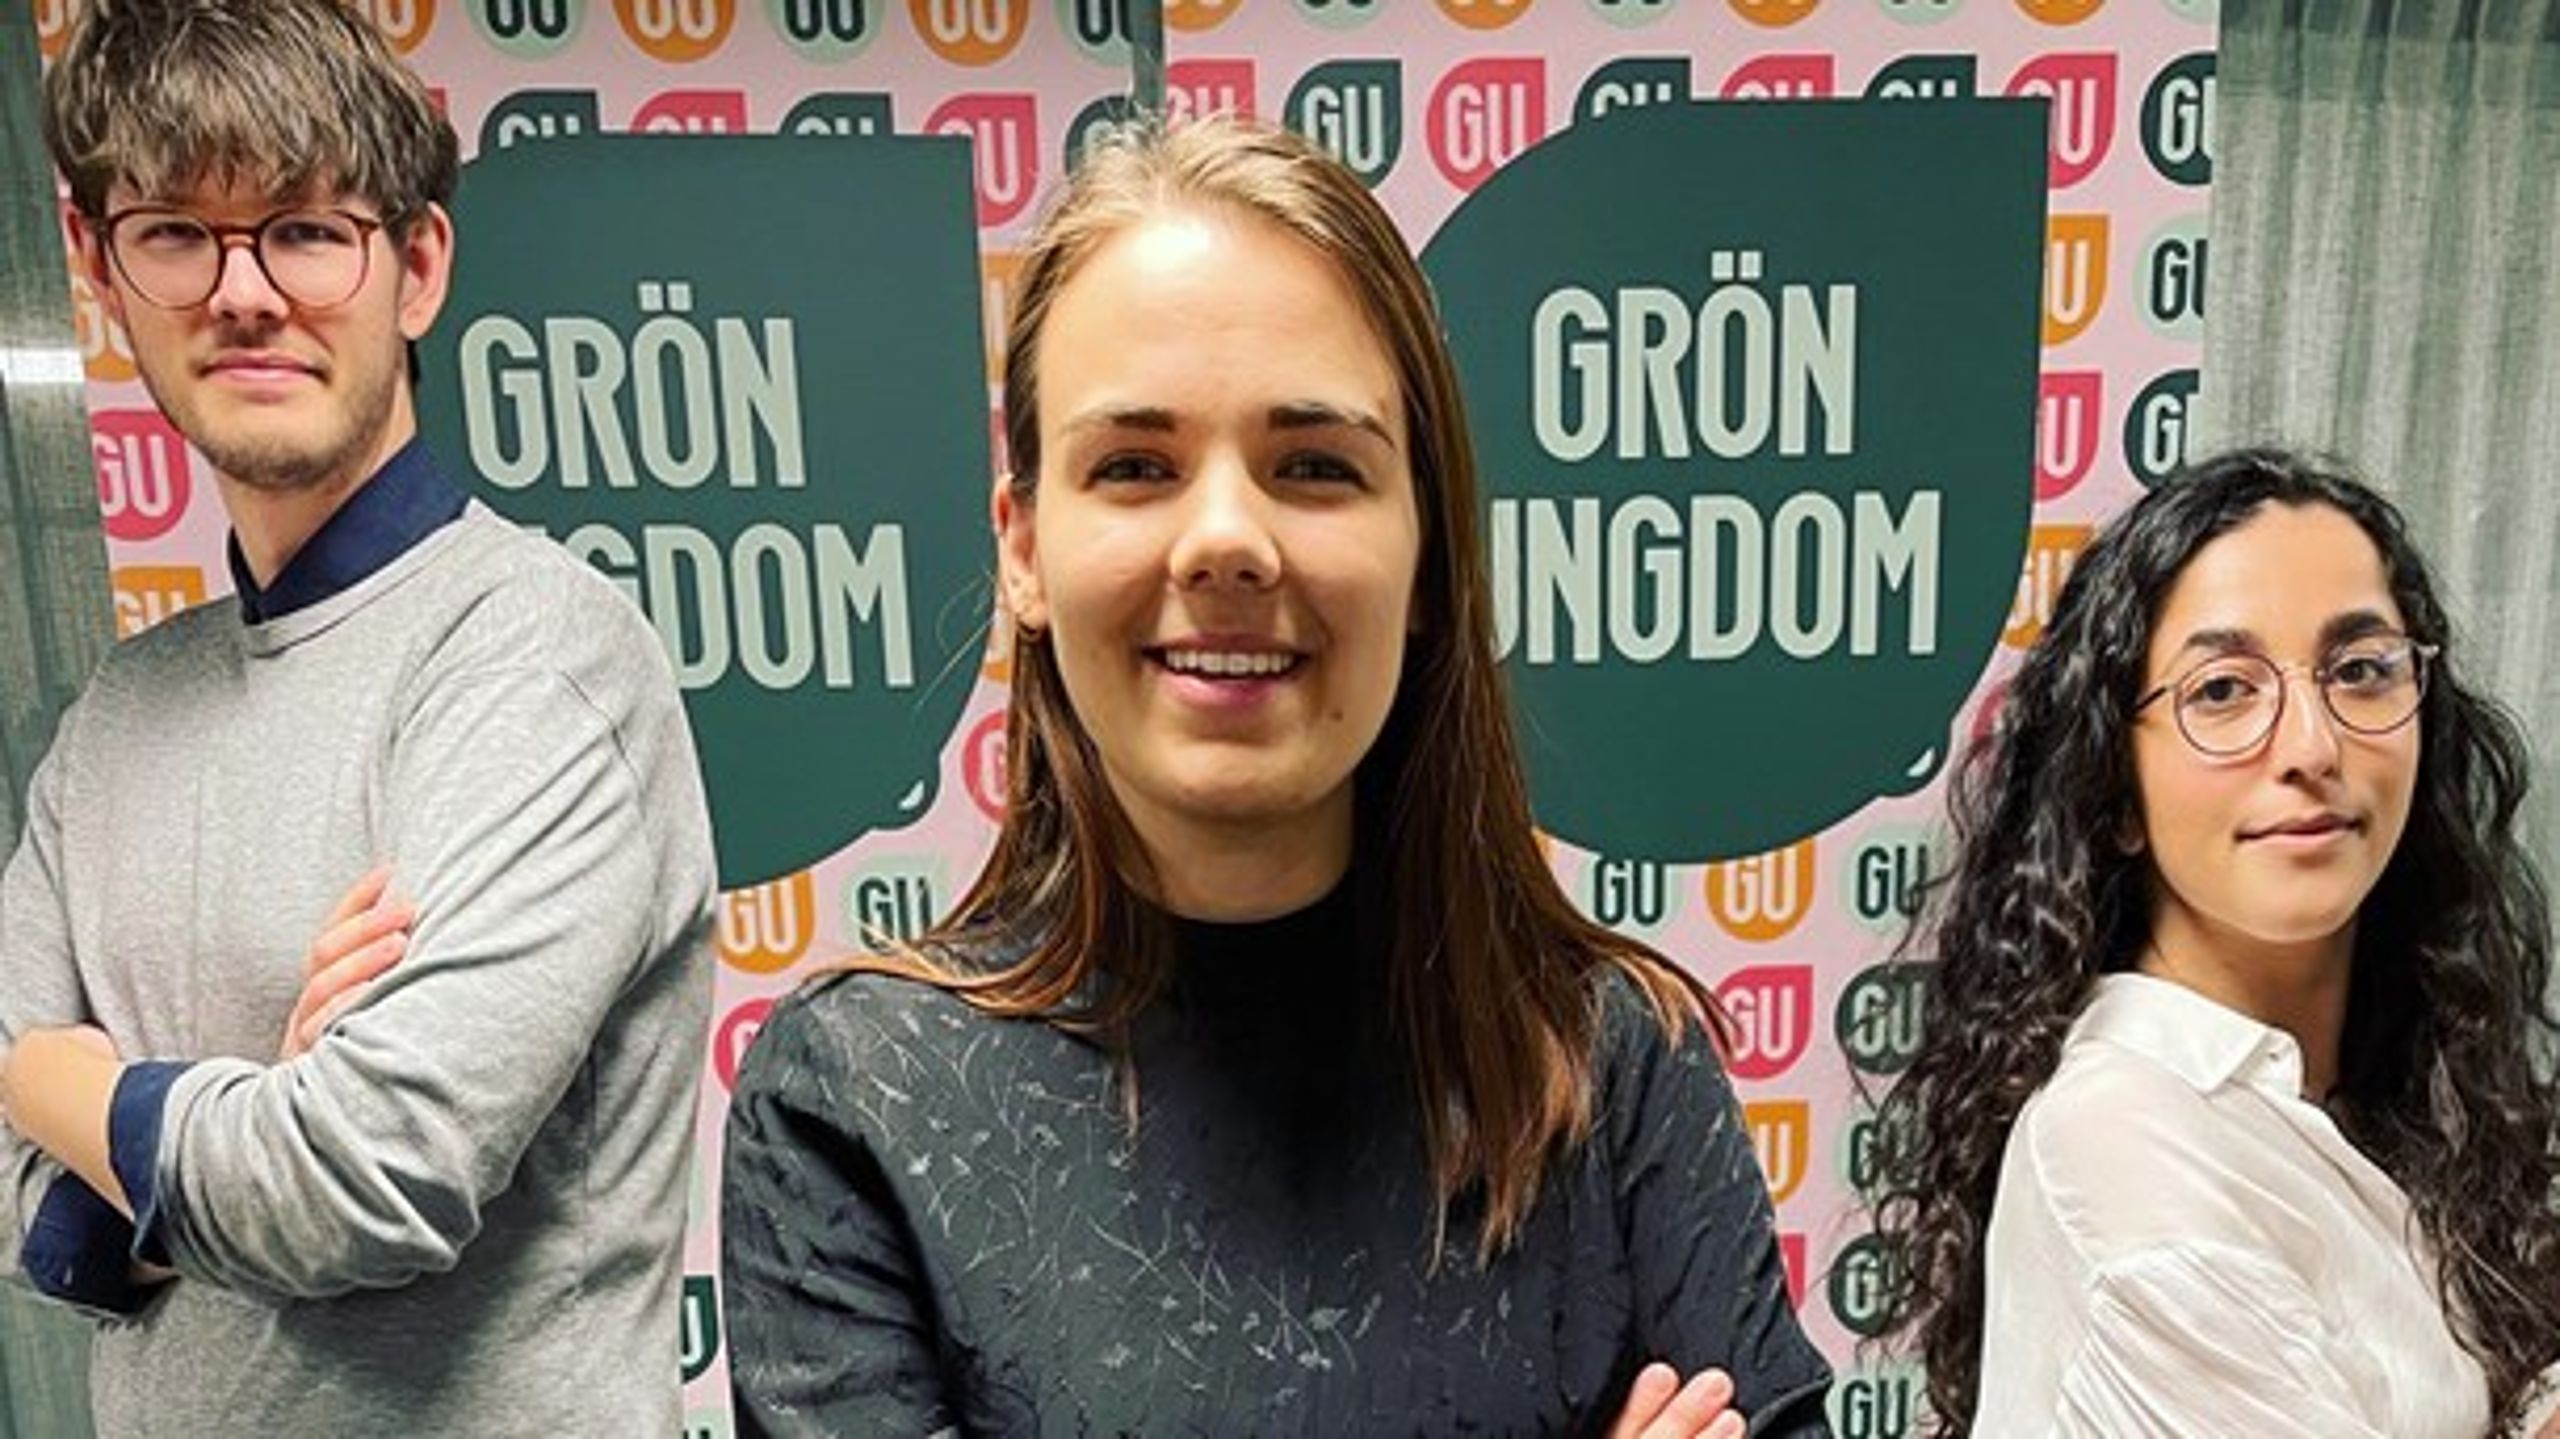 Lovisa Berglund är ny förbundssekreterare i Grön ungdom. Här tillsammans med språkrören David Ling och Aida Badeli.